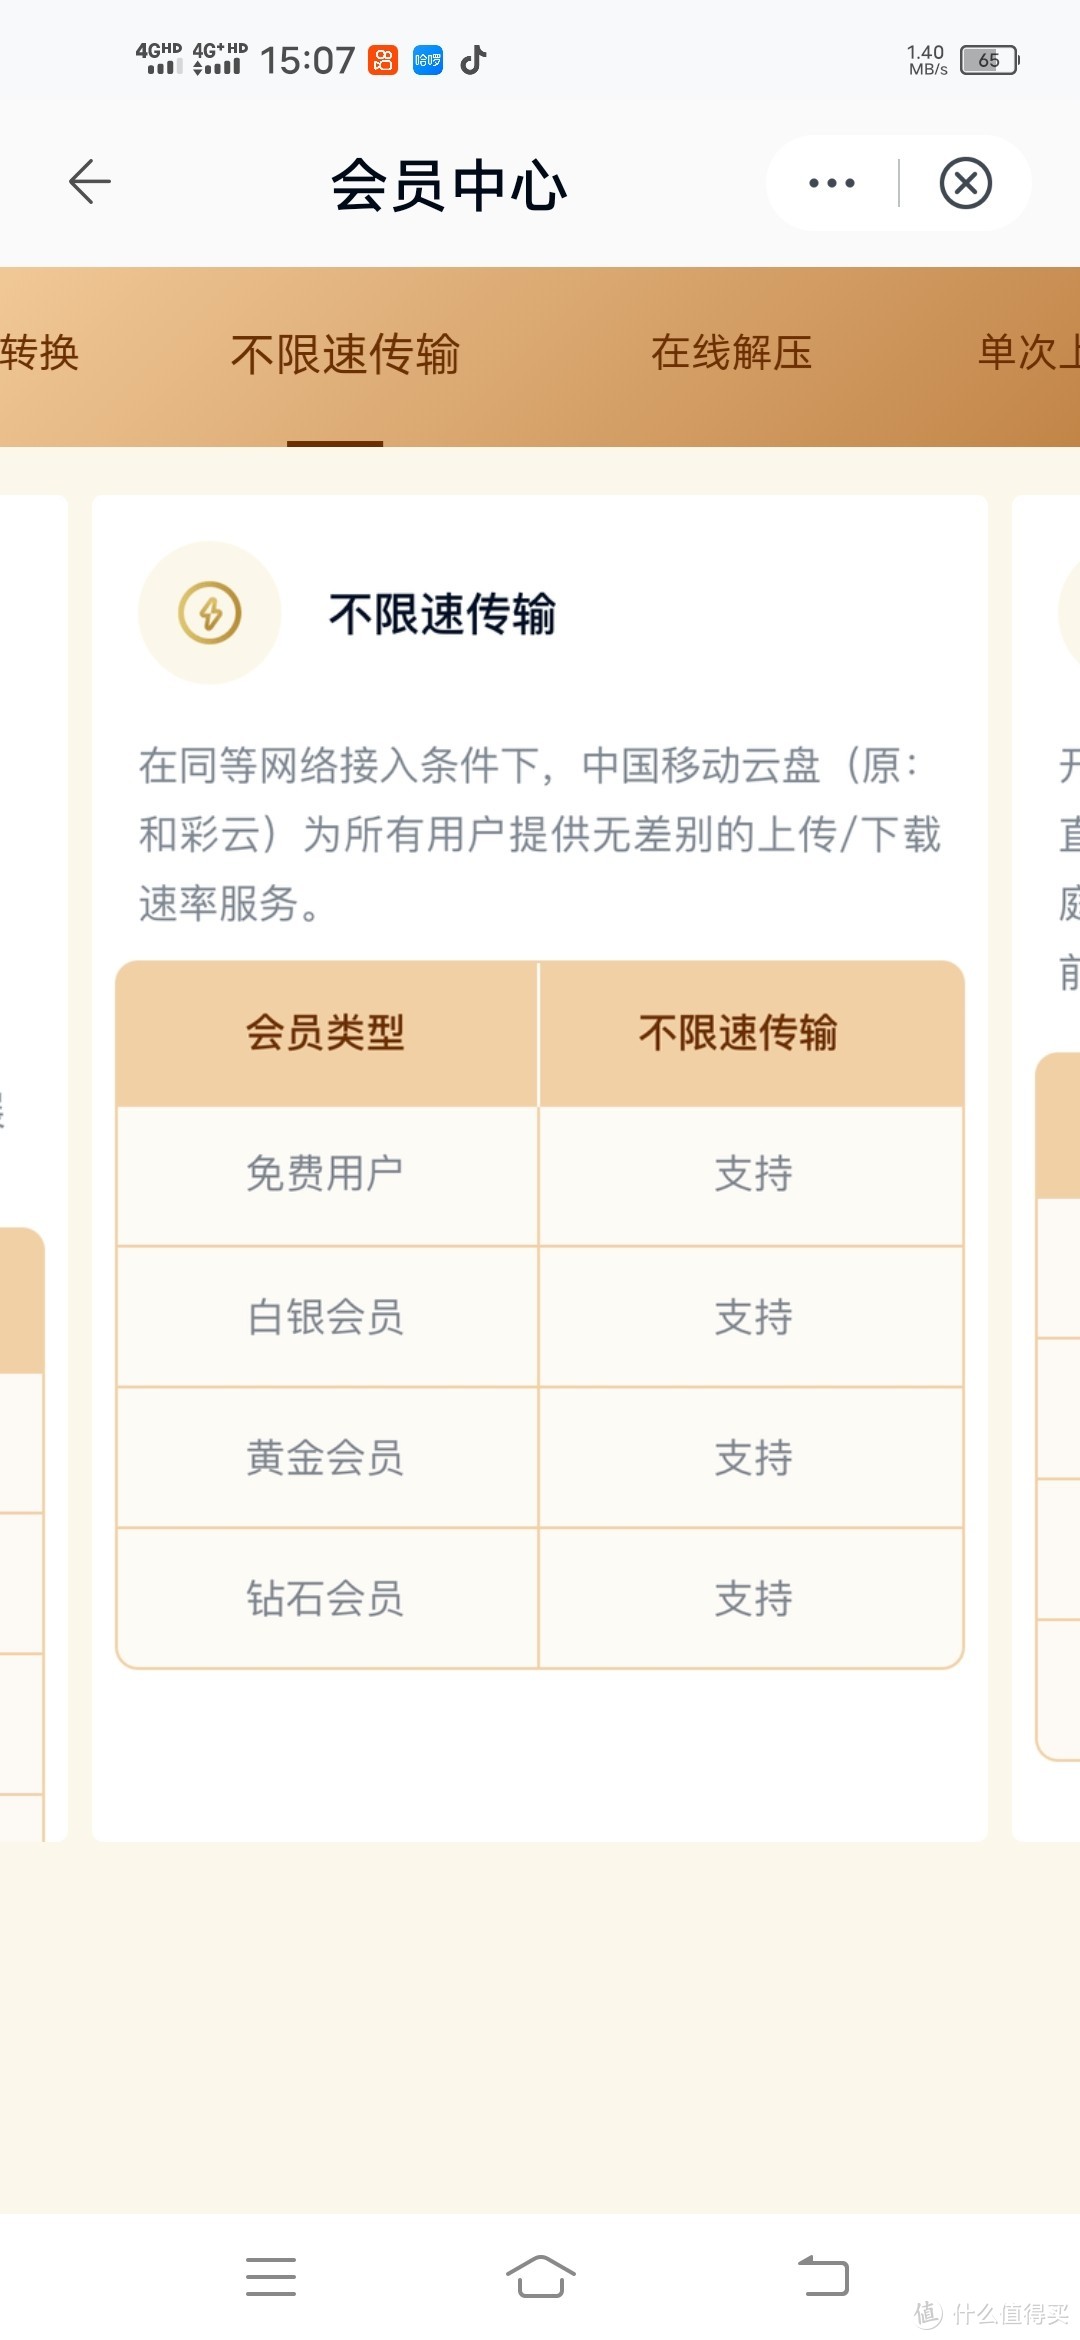 经验分享一:中国移动云盘的使用——17项云盘会员权益解析攻略